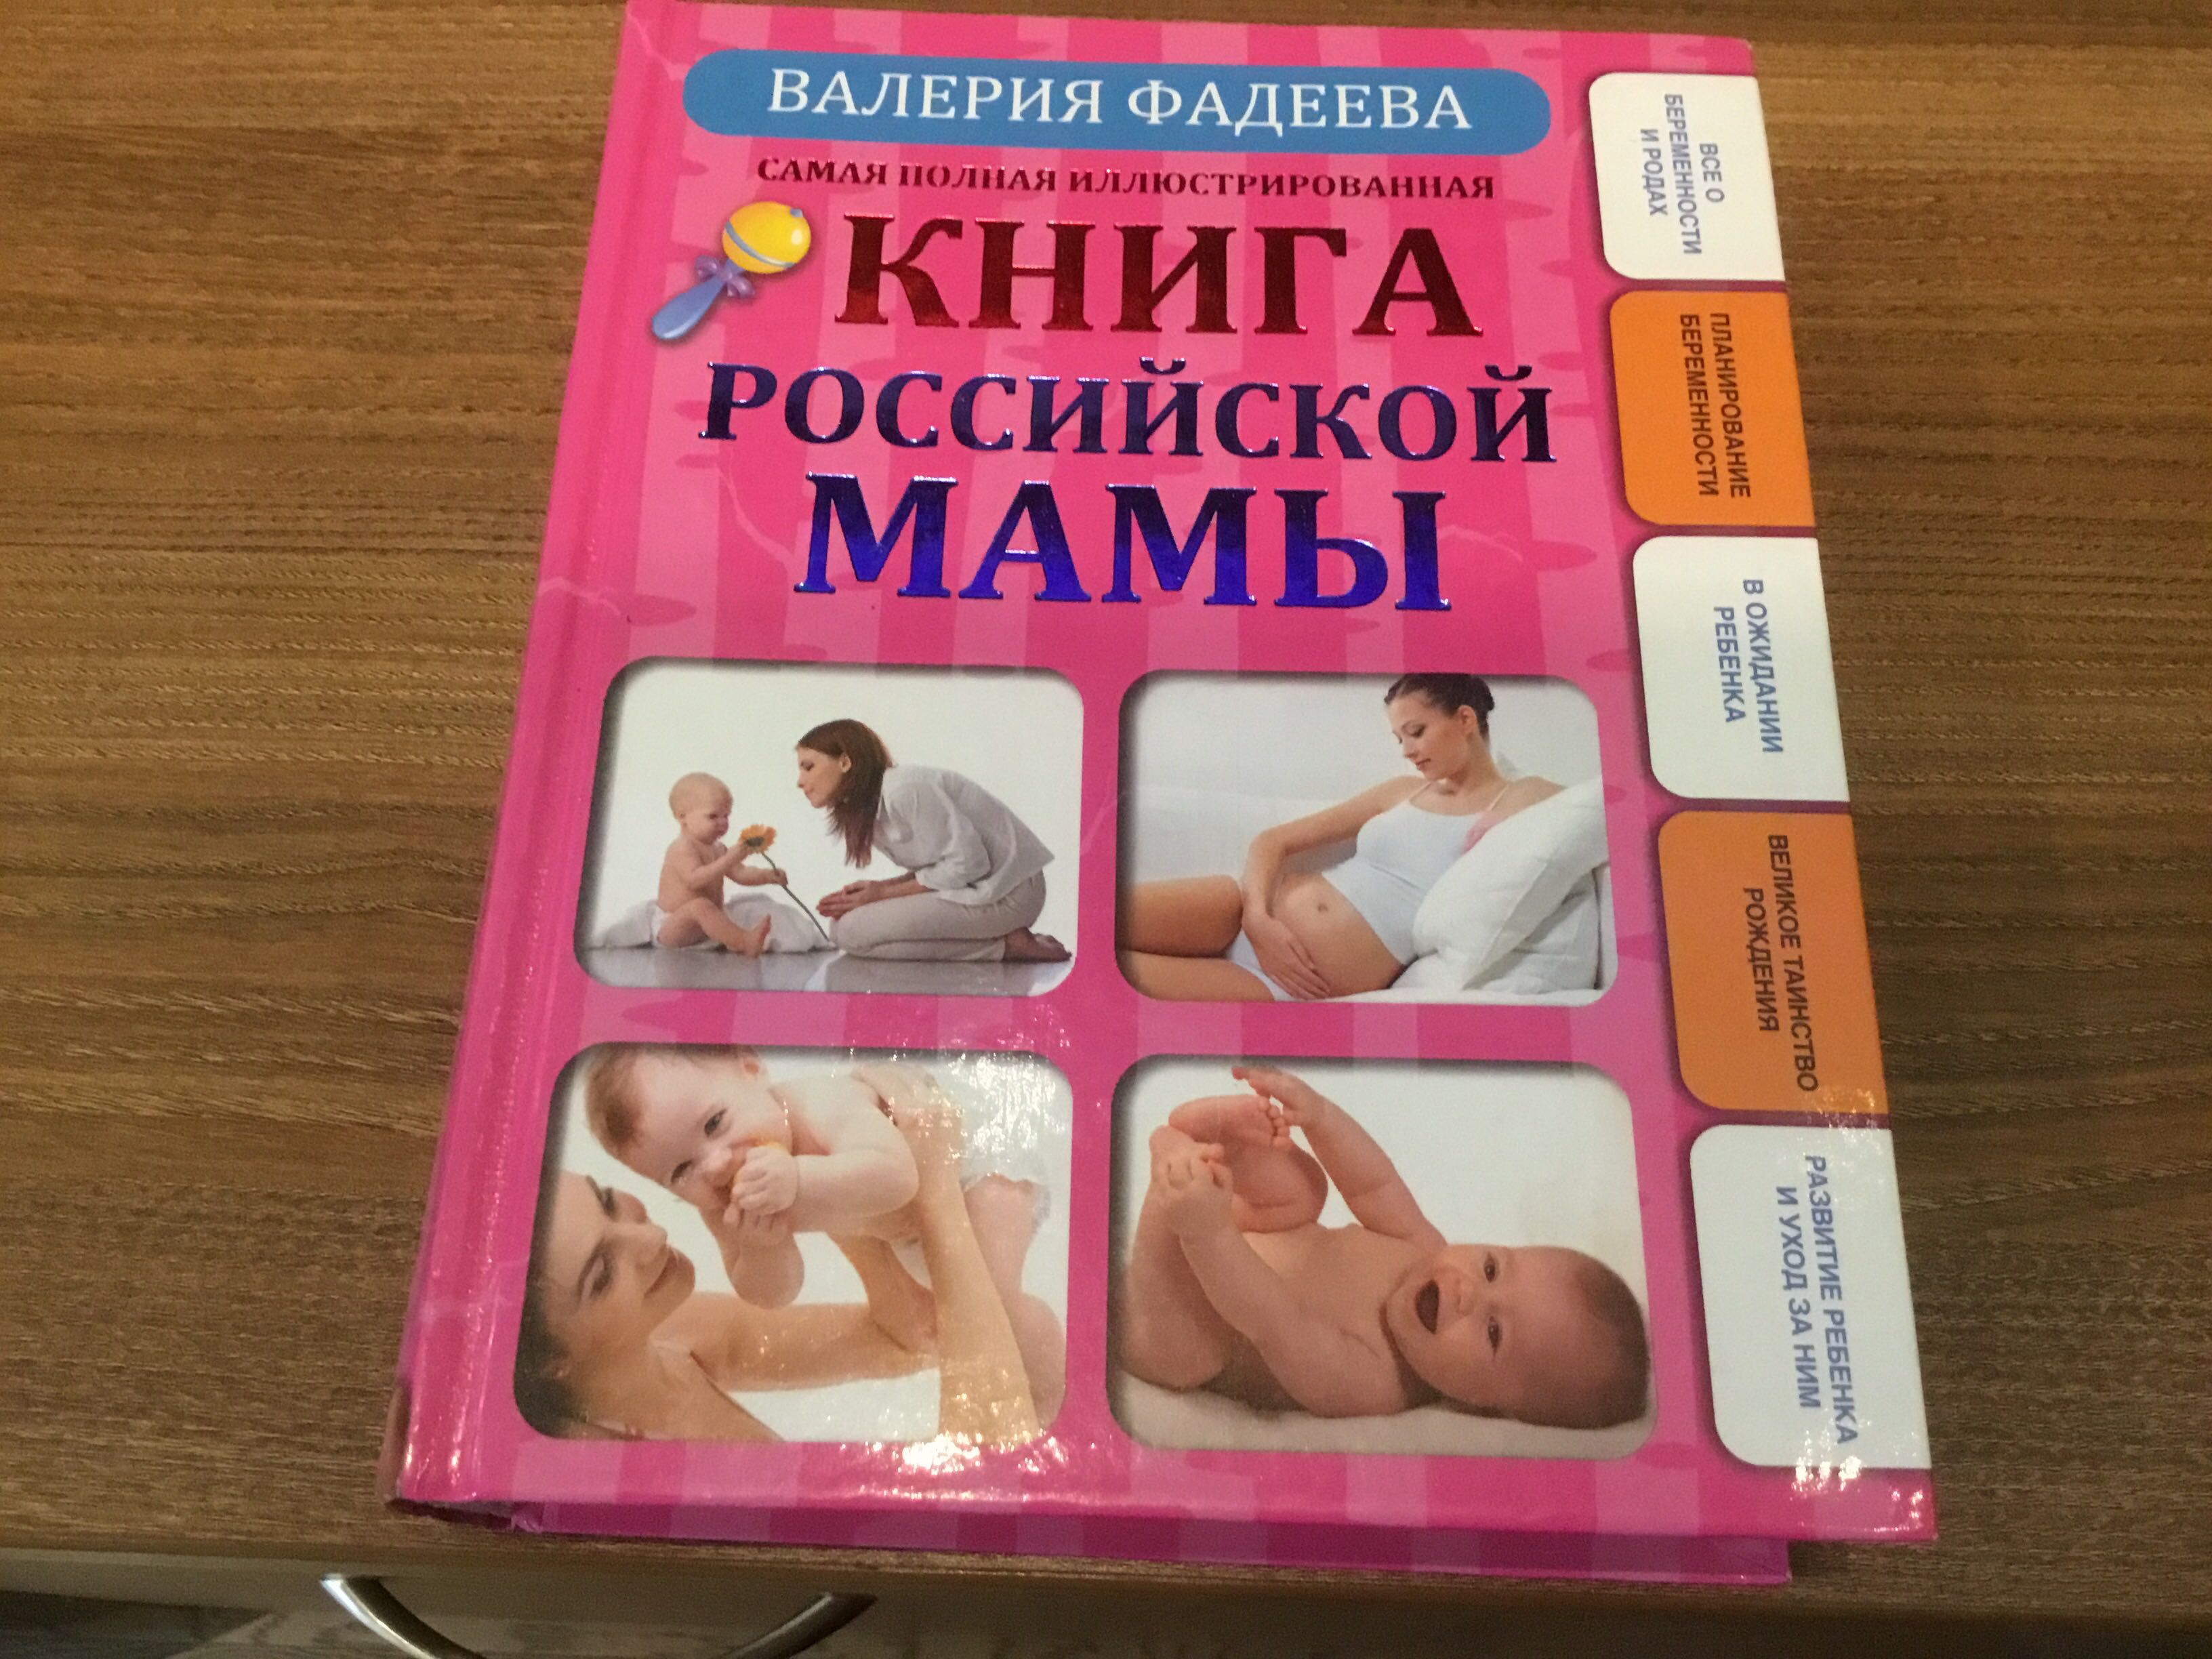 Книги для будущих мам